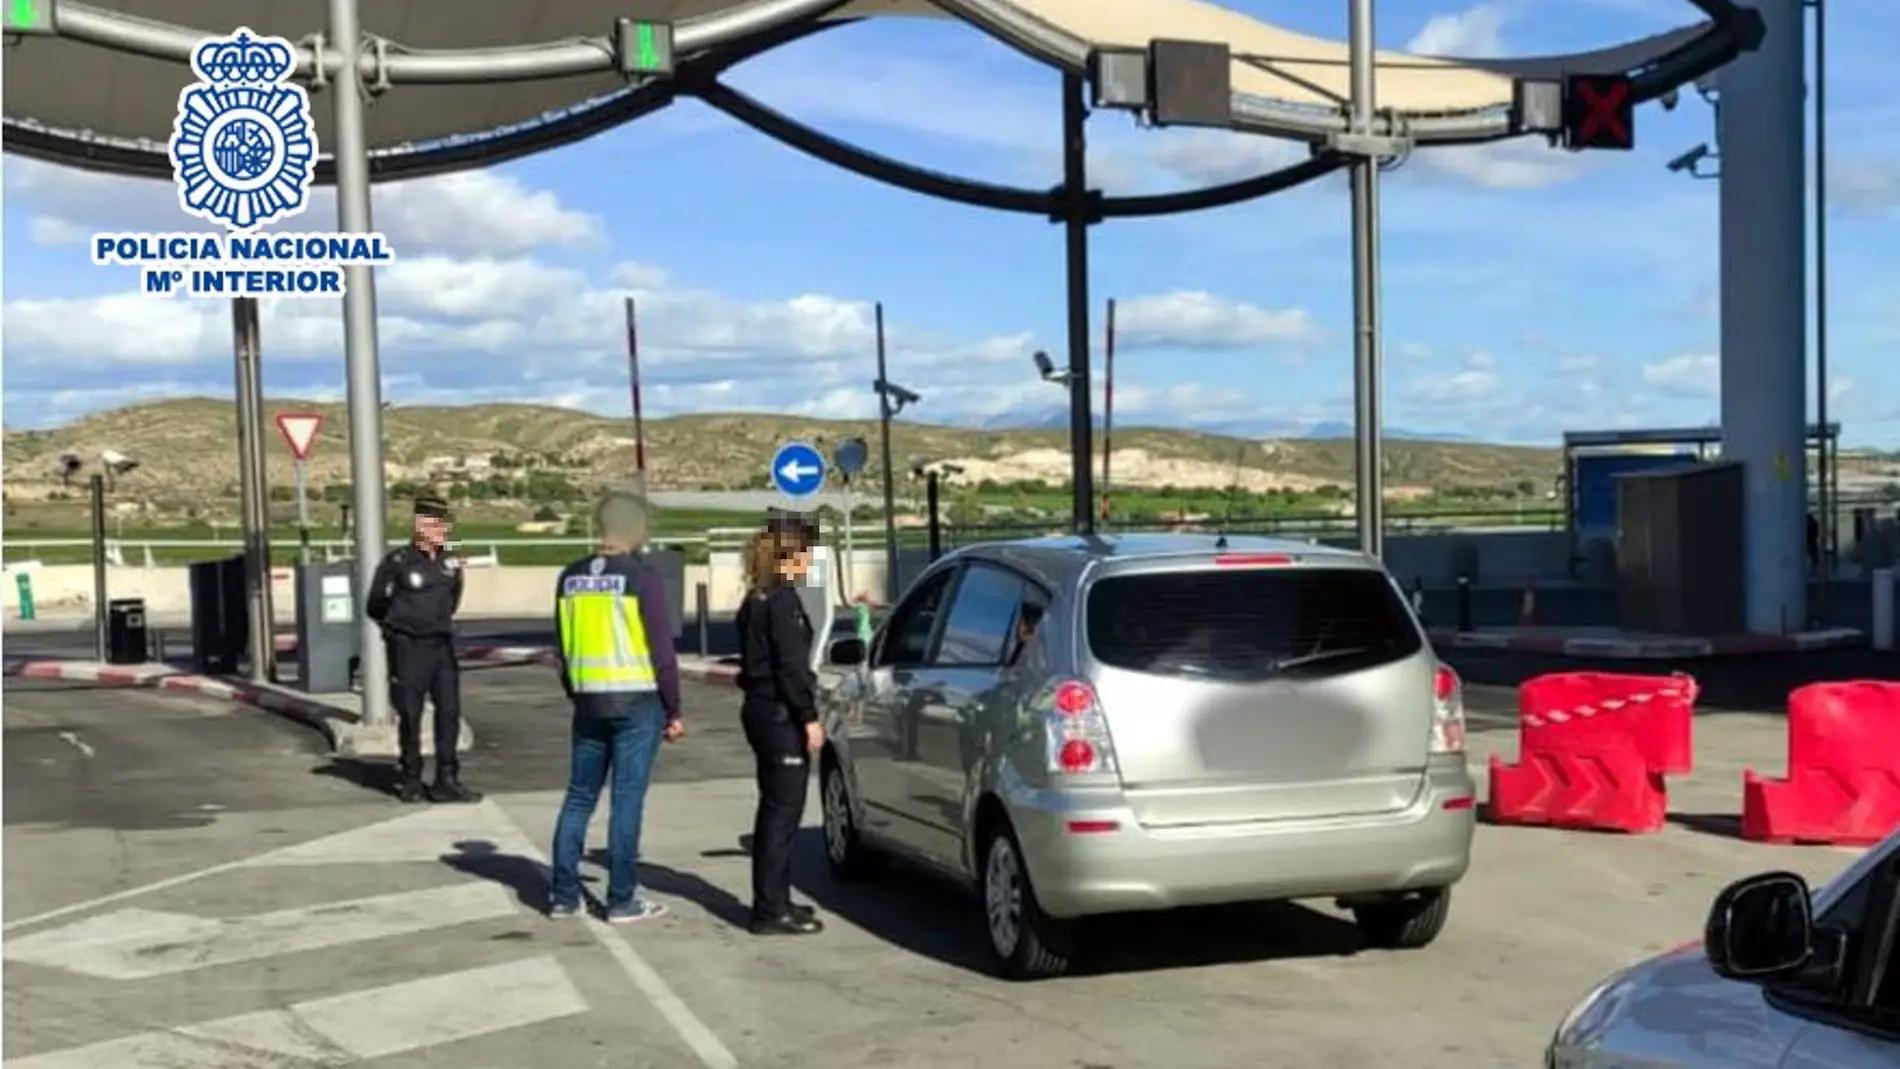 Cuatro detenidos por estafar 6000 euros en el parking del aeropuerto Alicante-Elche al no activar la barrera.